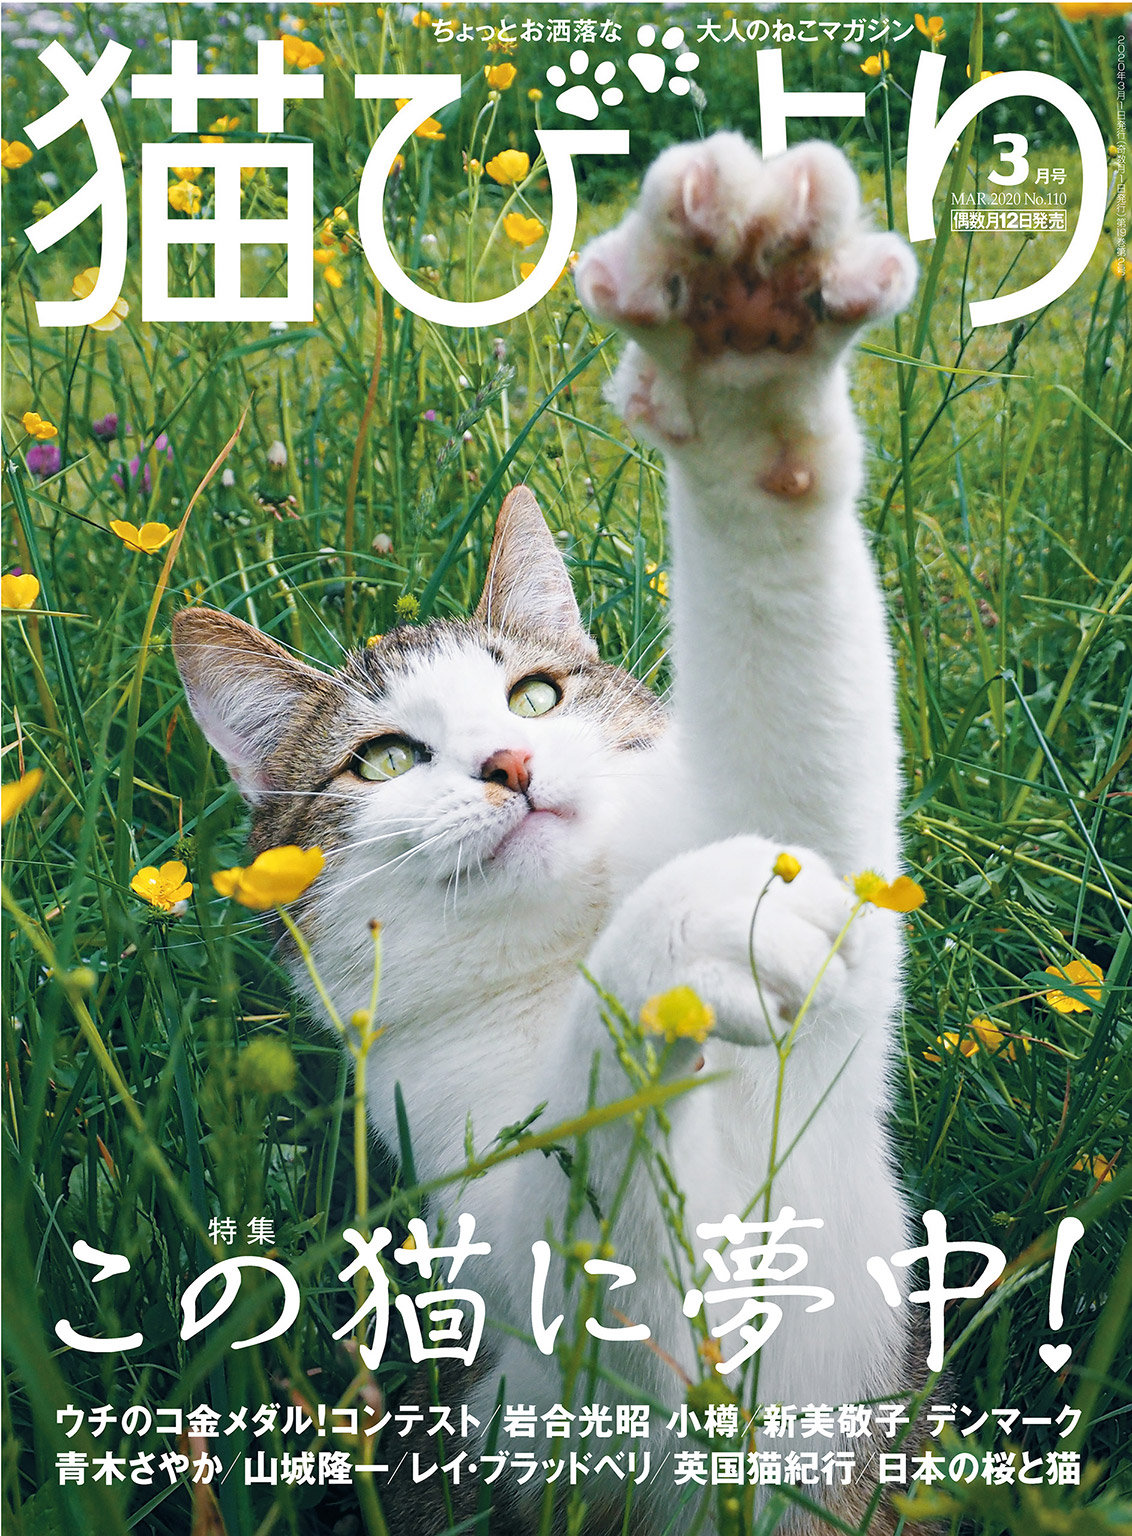 猫びより2020年3月号 Vol.110 - 猫びより編集部/岩合光昭 - 漫画・無料